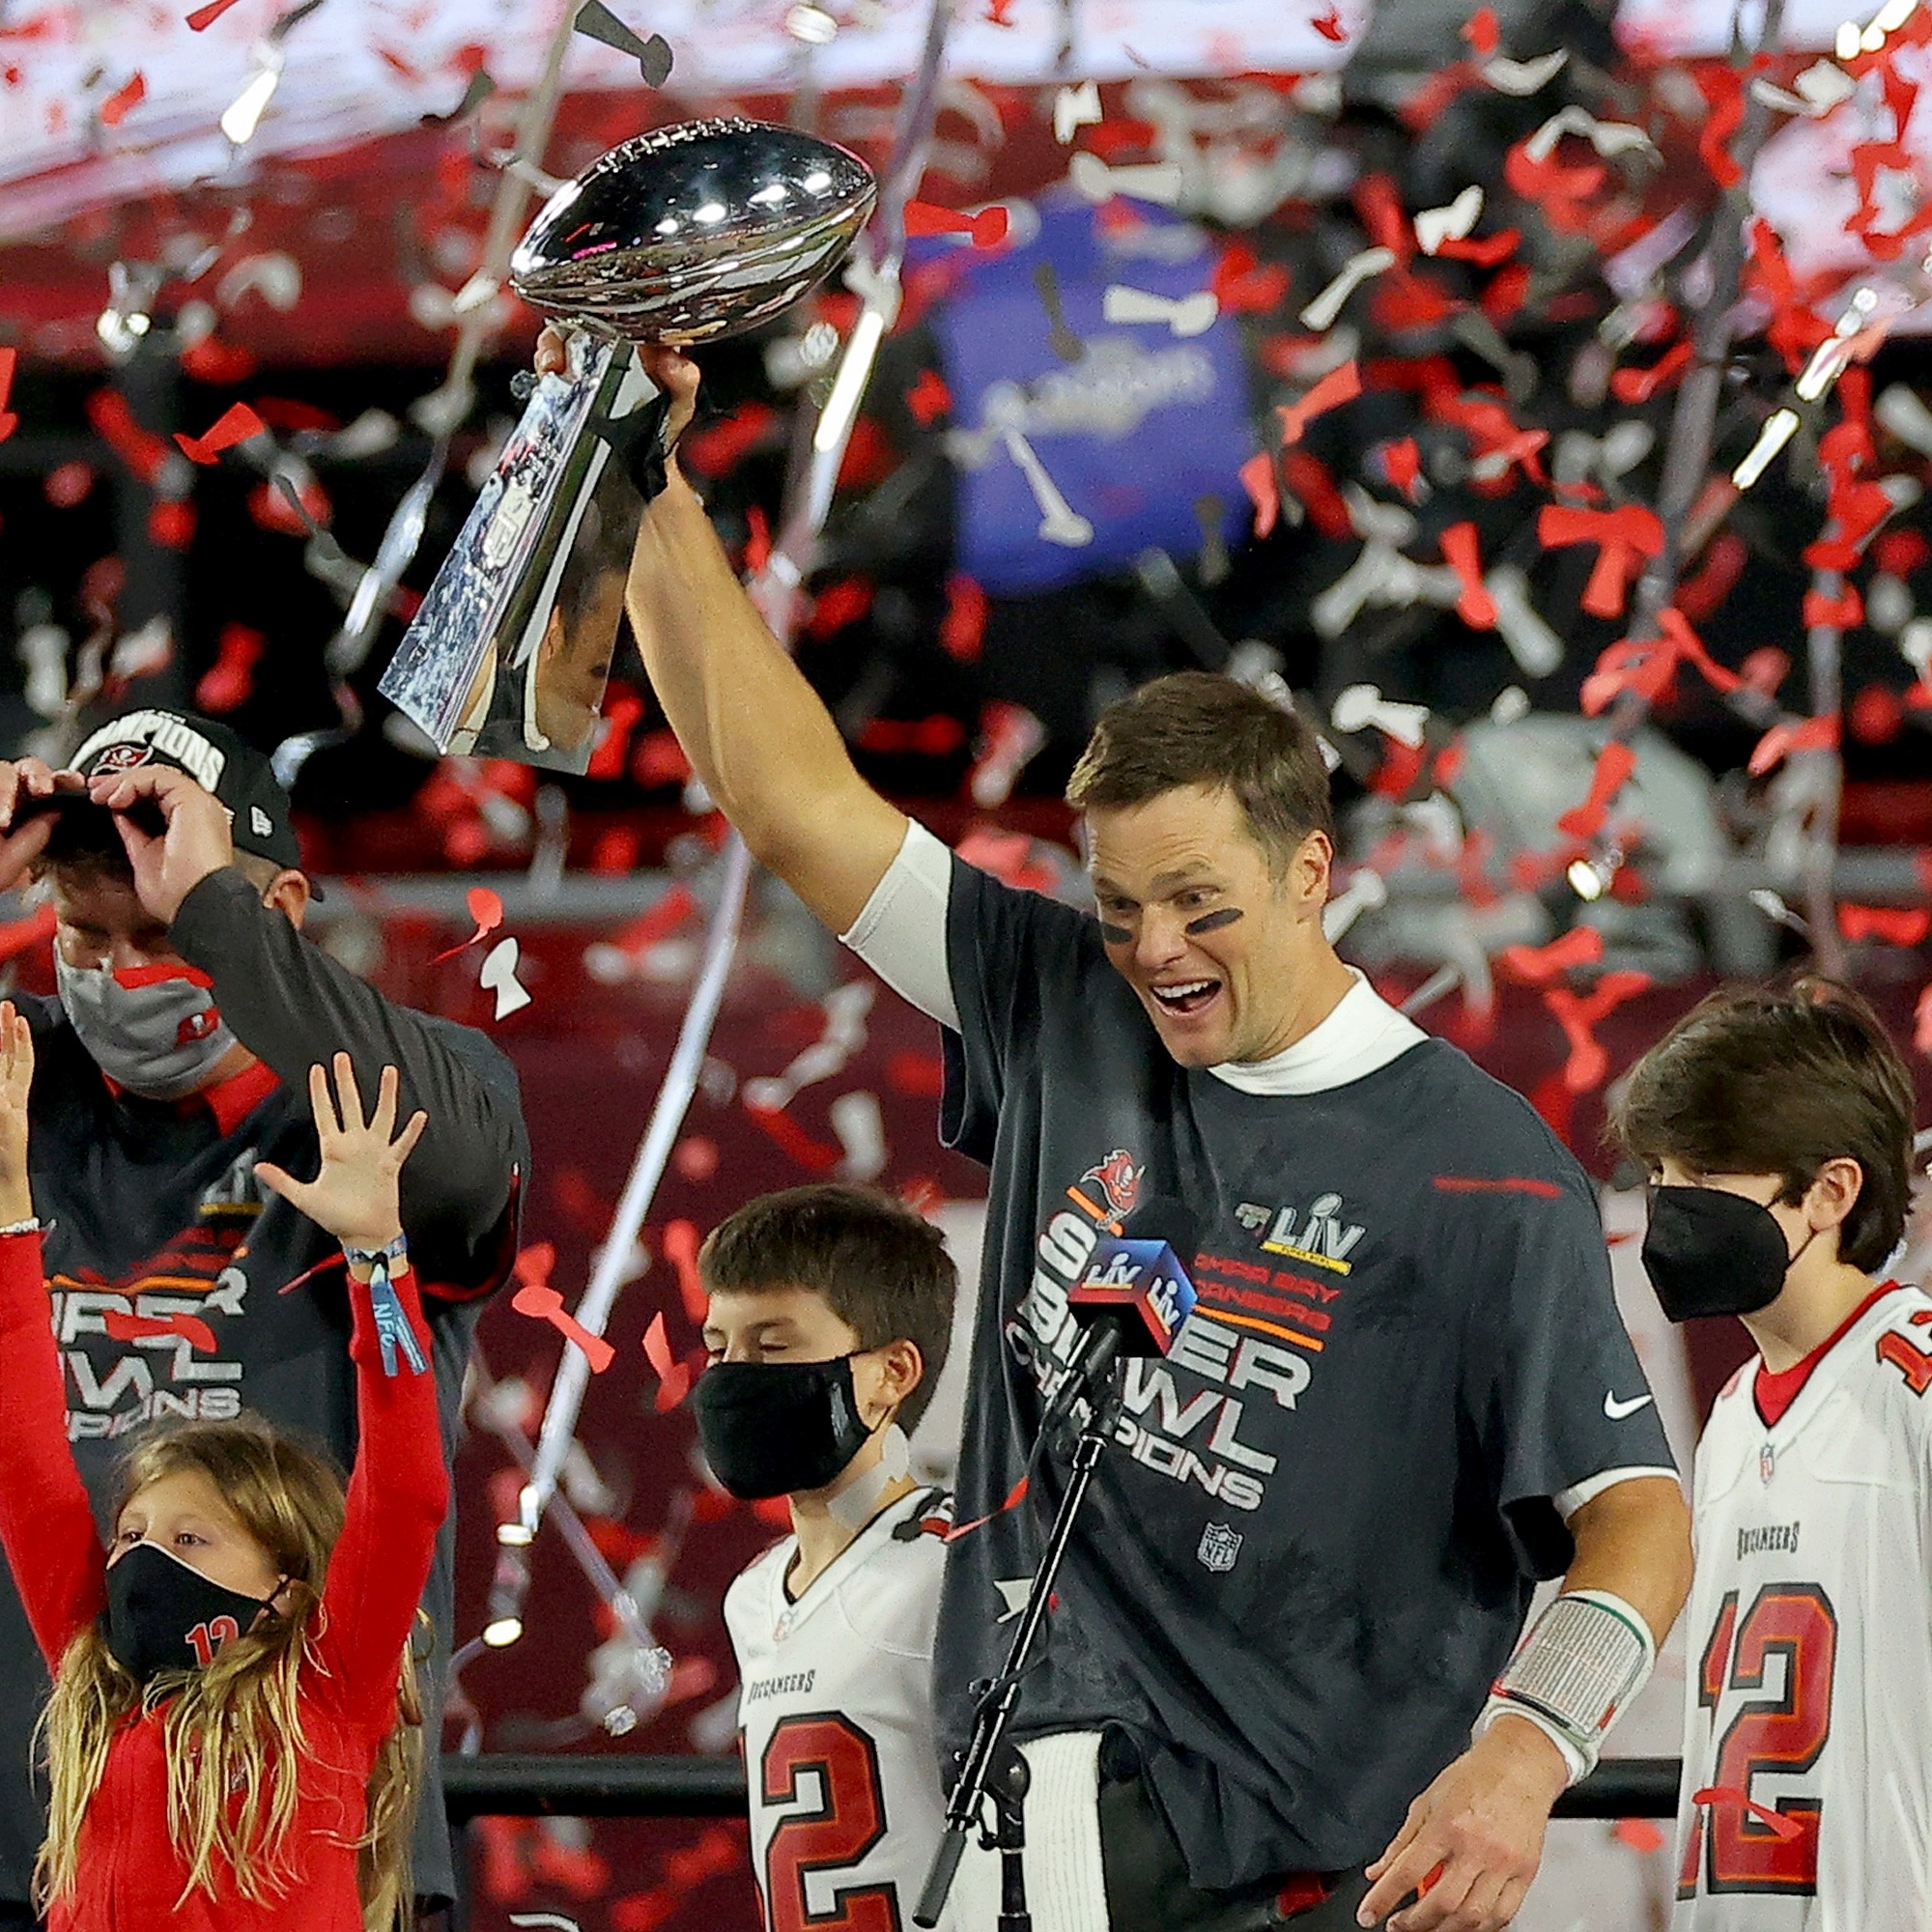 Maior jogador da história da NFL, Tom Brady enfrenta seu sucessor Patrick  Mahomes no Super Bowl LV